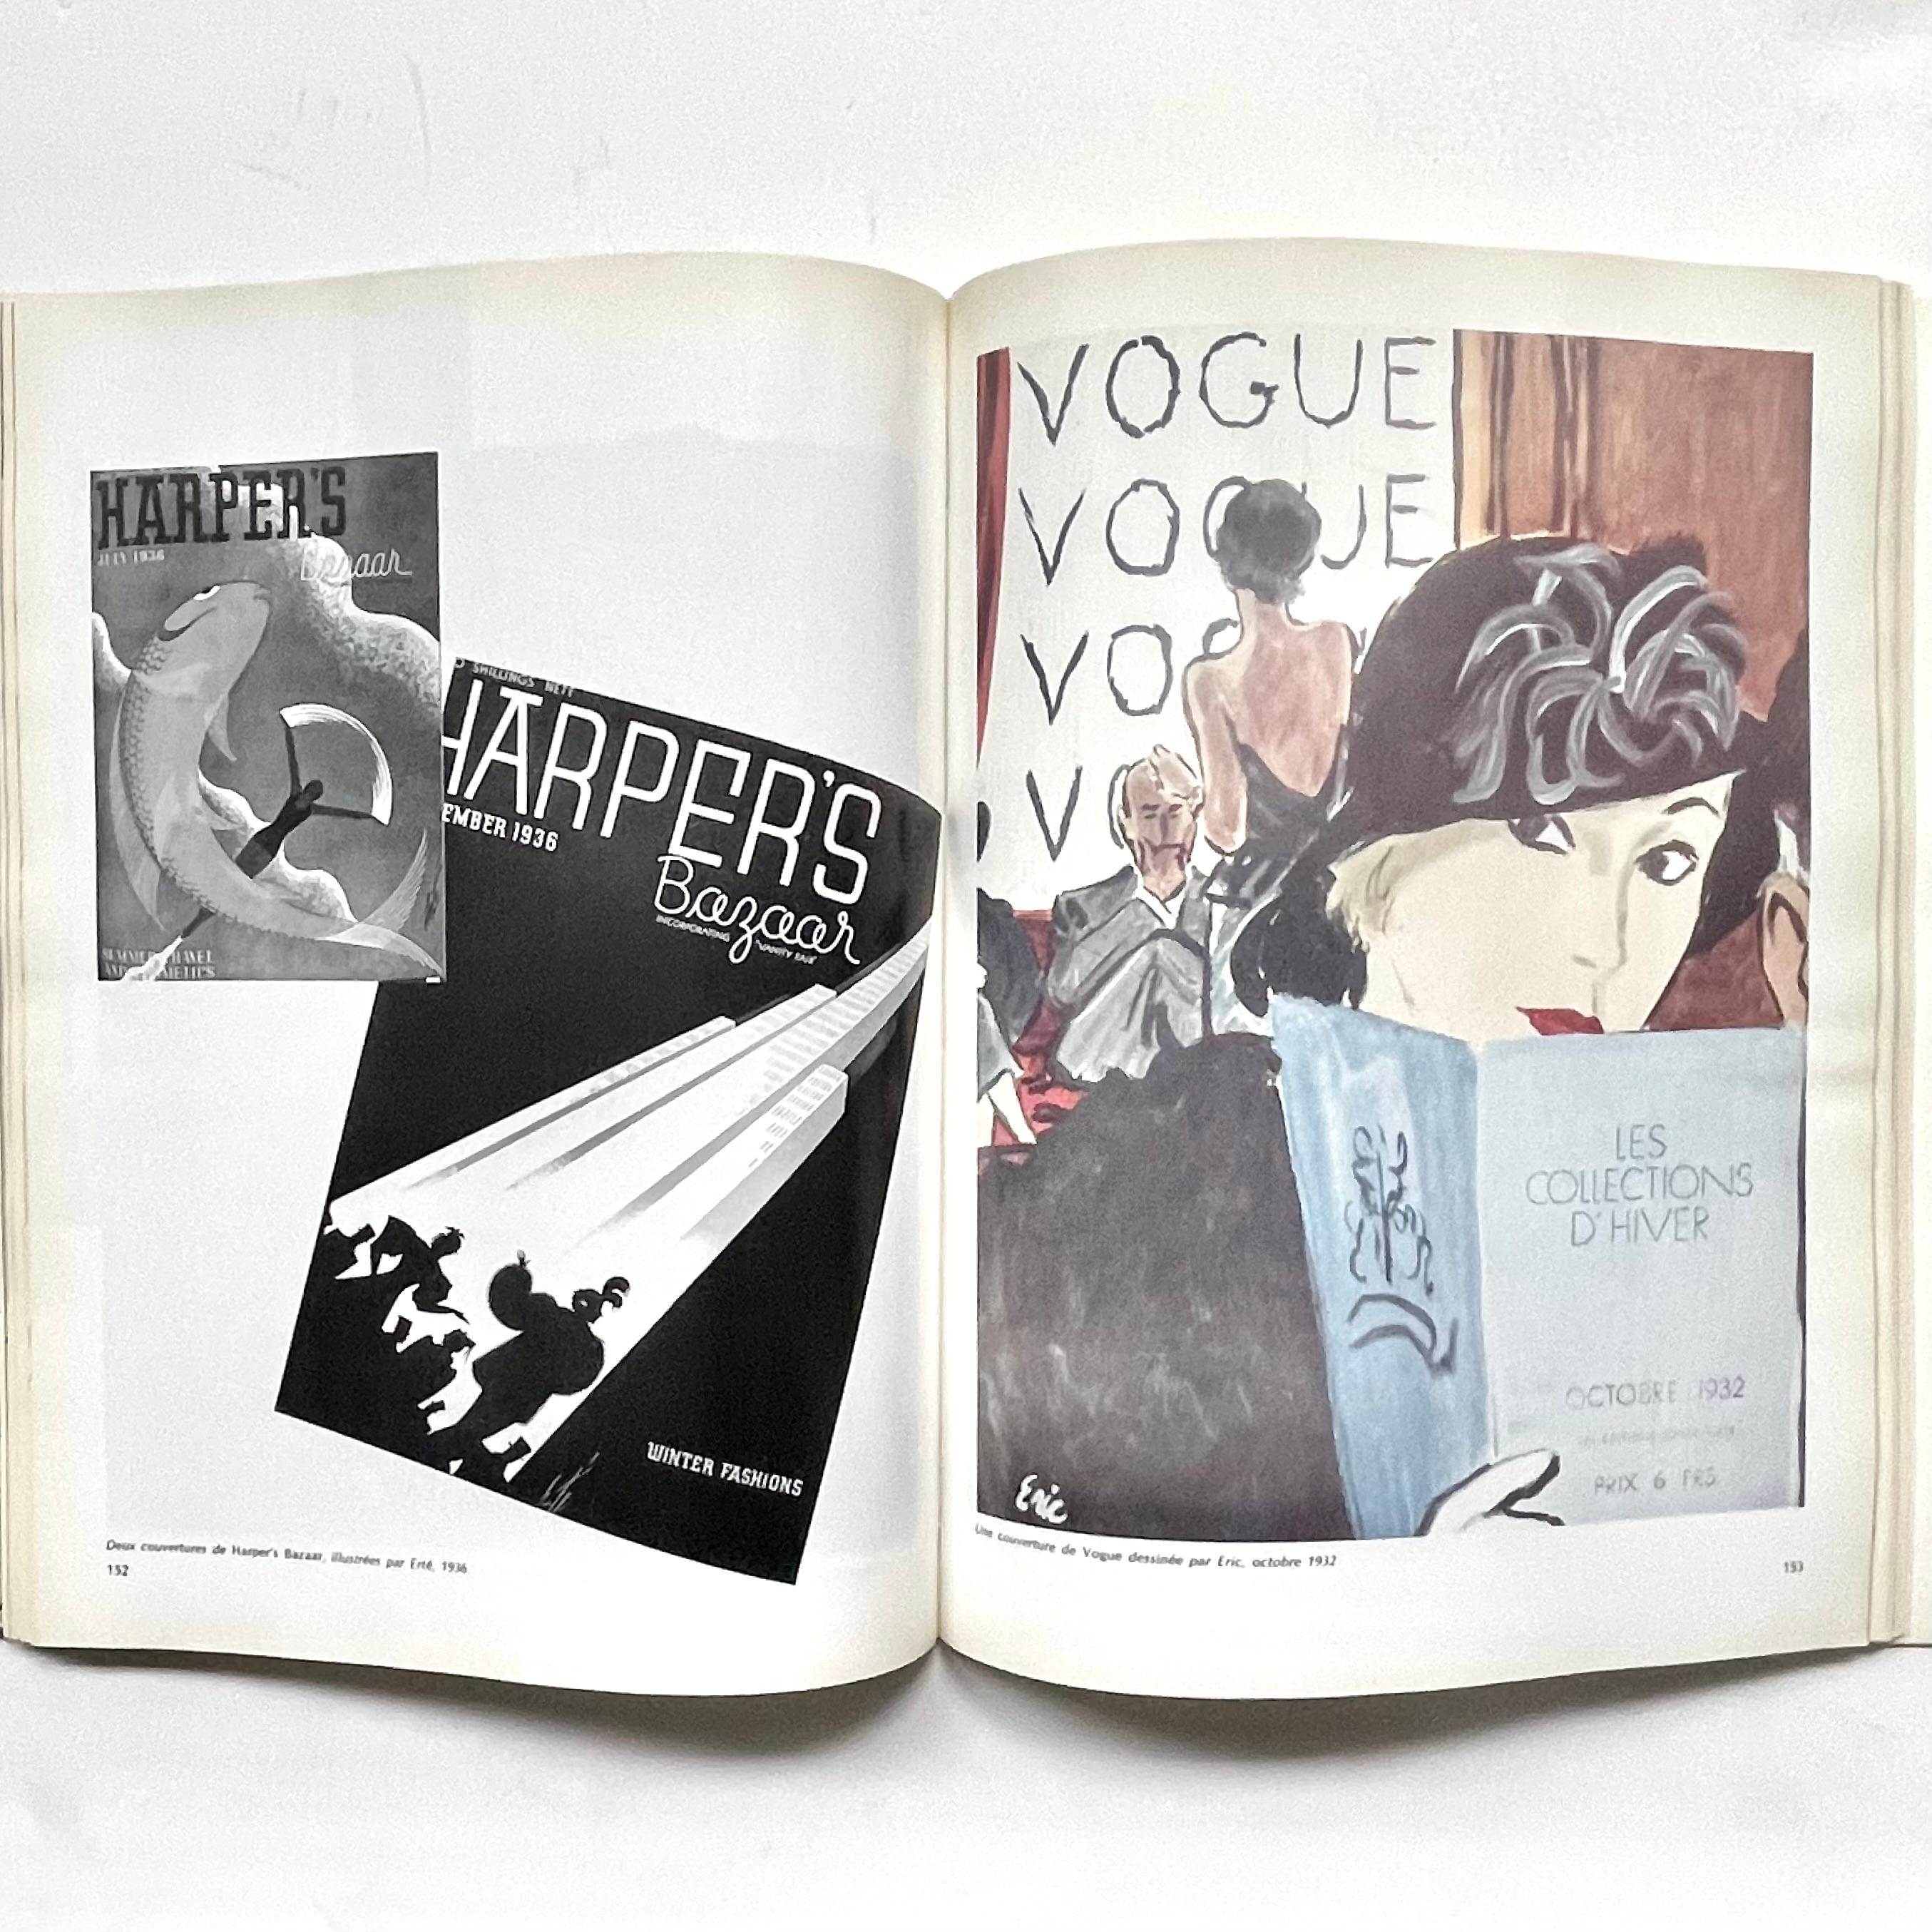 Papier Paris Couture Années Trente (catalogue d'exposition) - Les am designs français des années 30